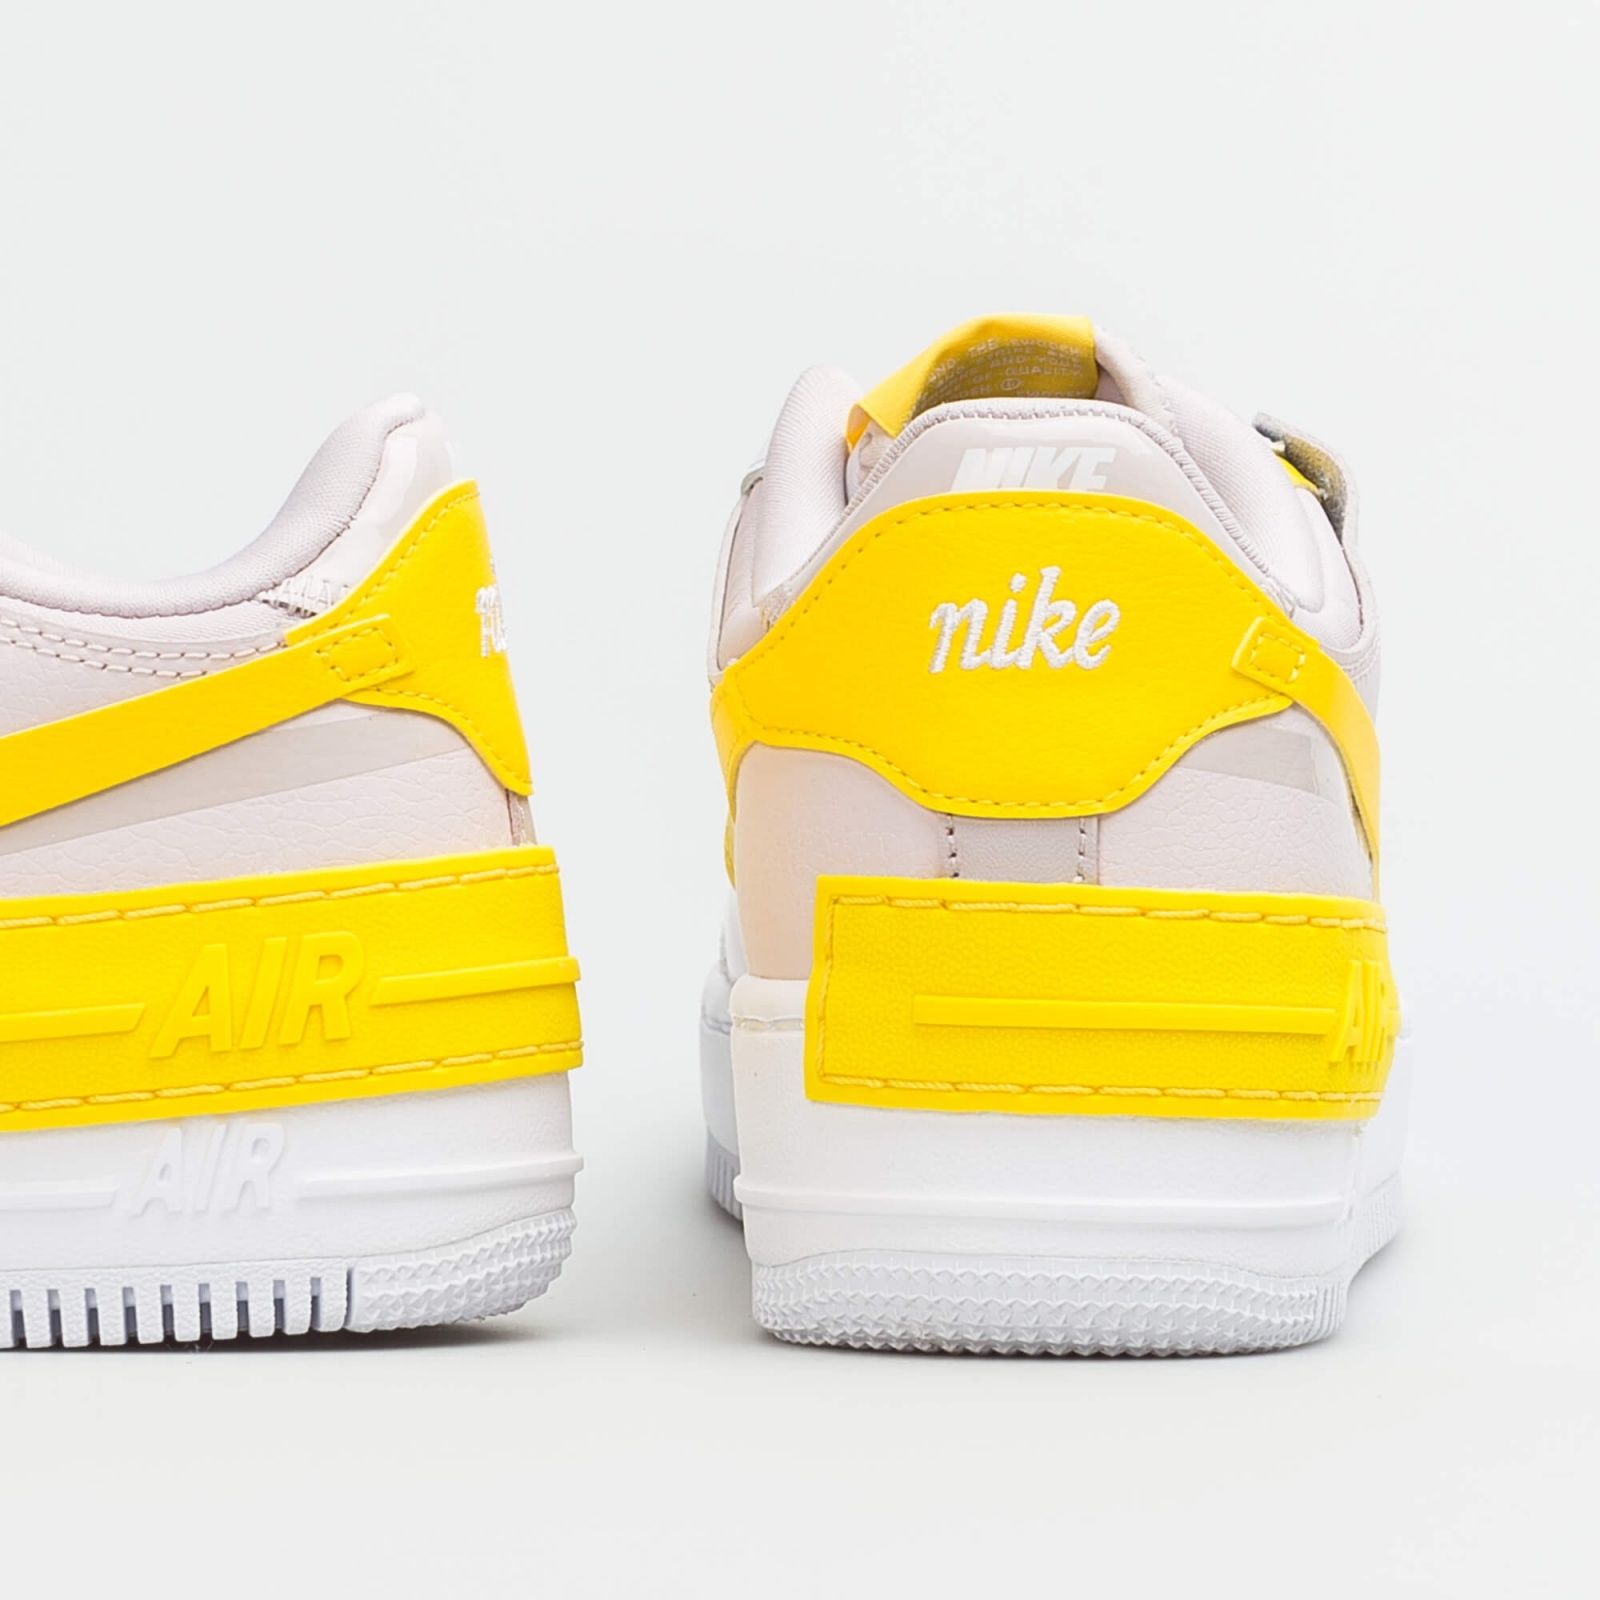 Nike Air Force 1 Shadow белые с желтым, кожаные женские